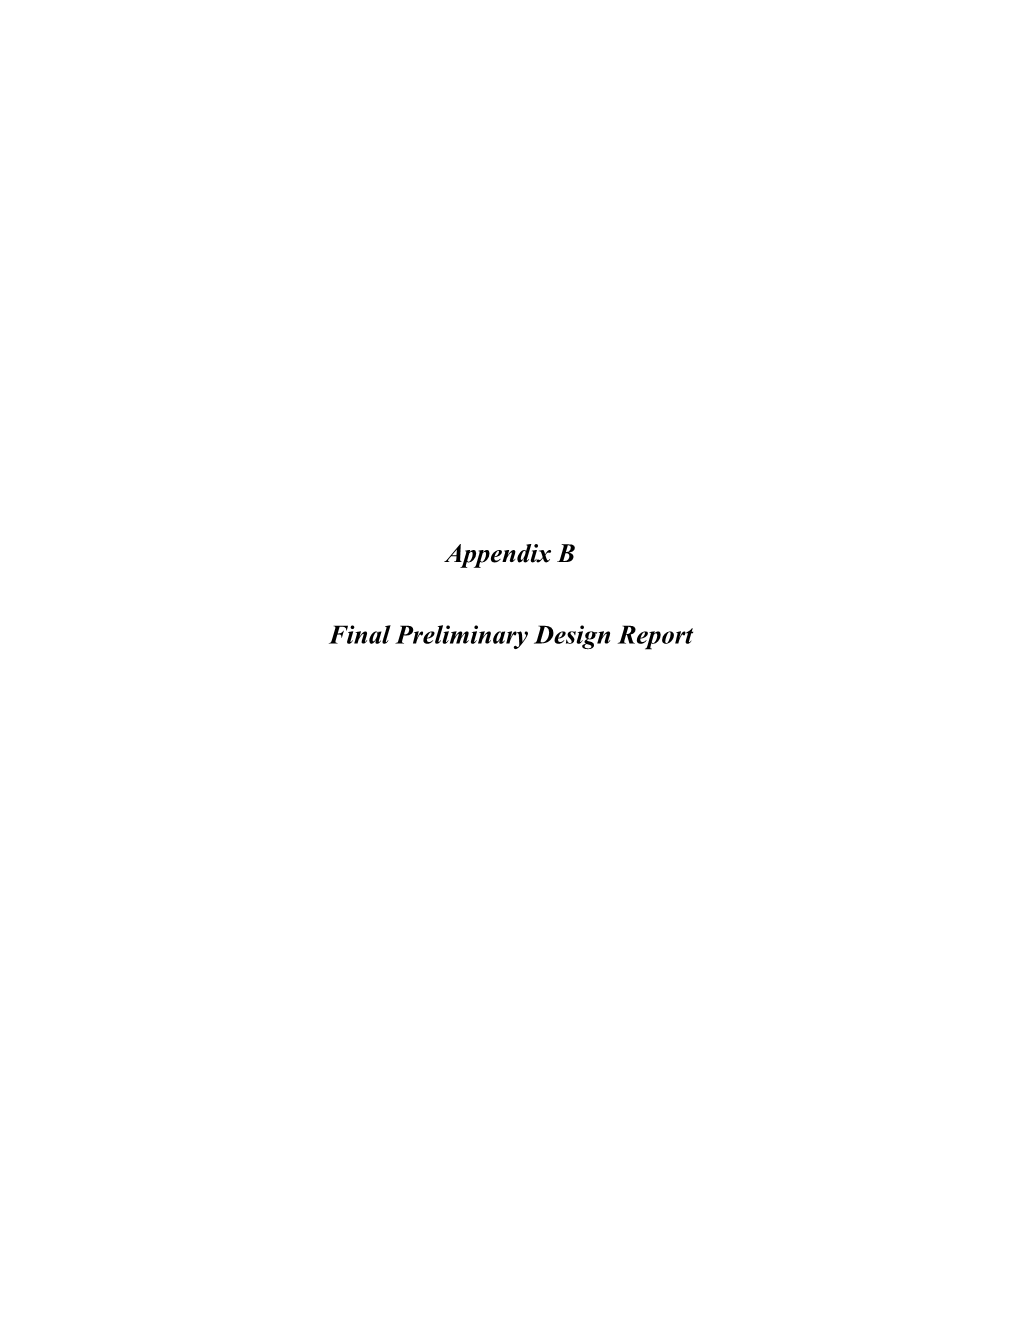 Appendix B Final Preliminary Design Report